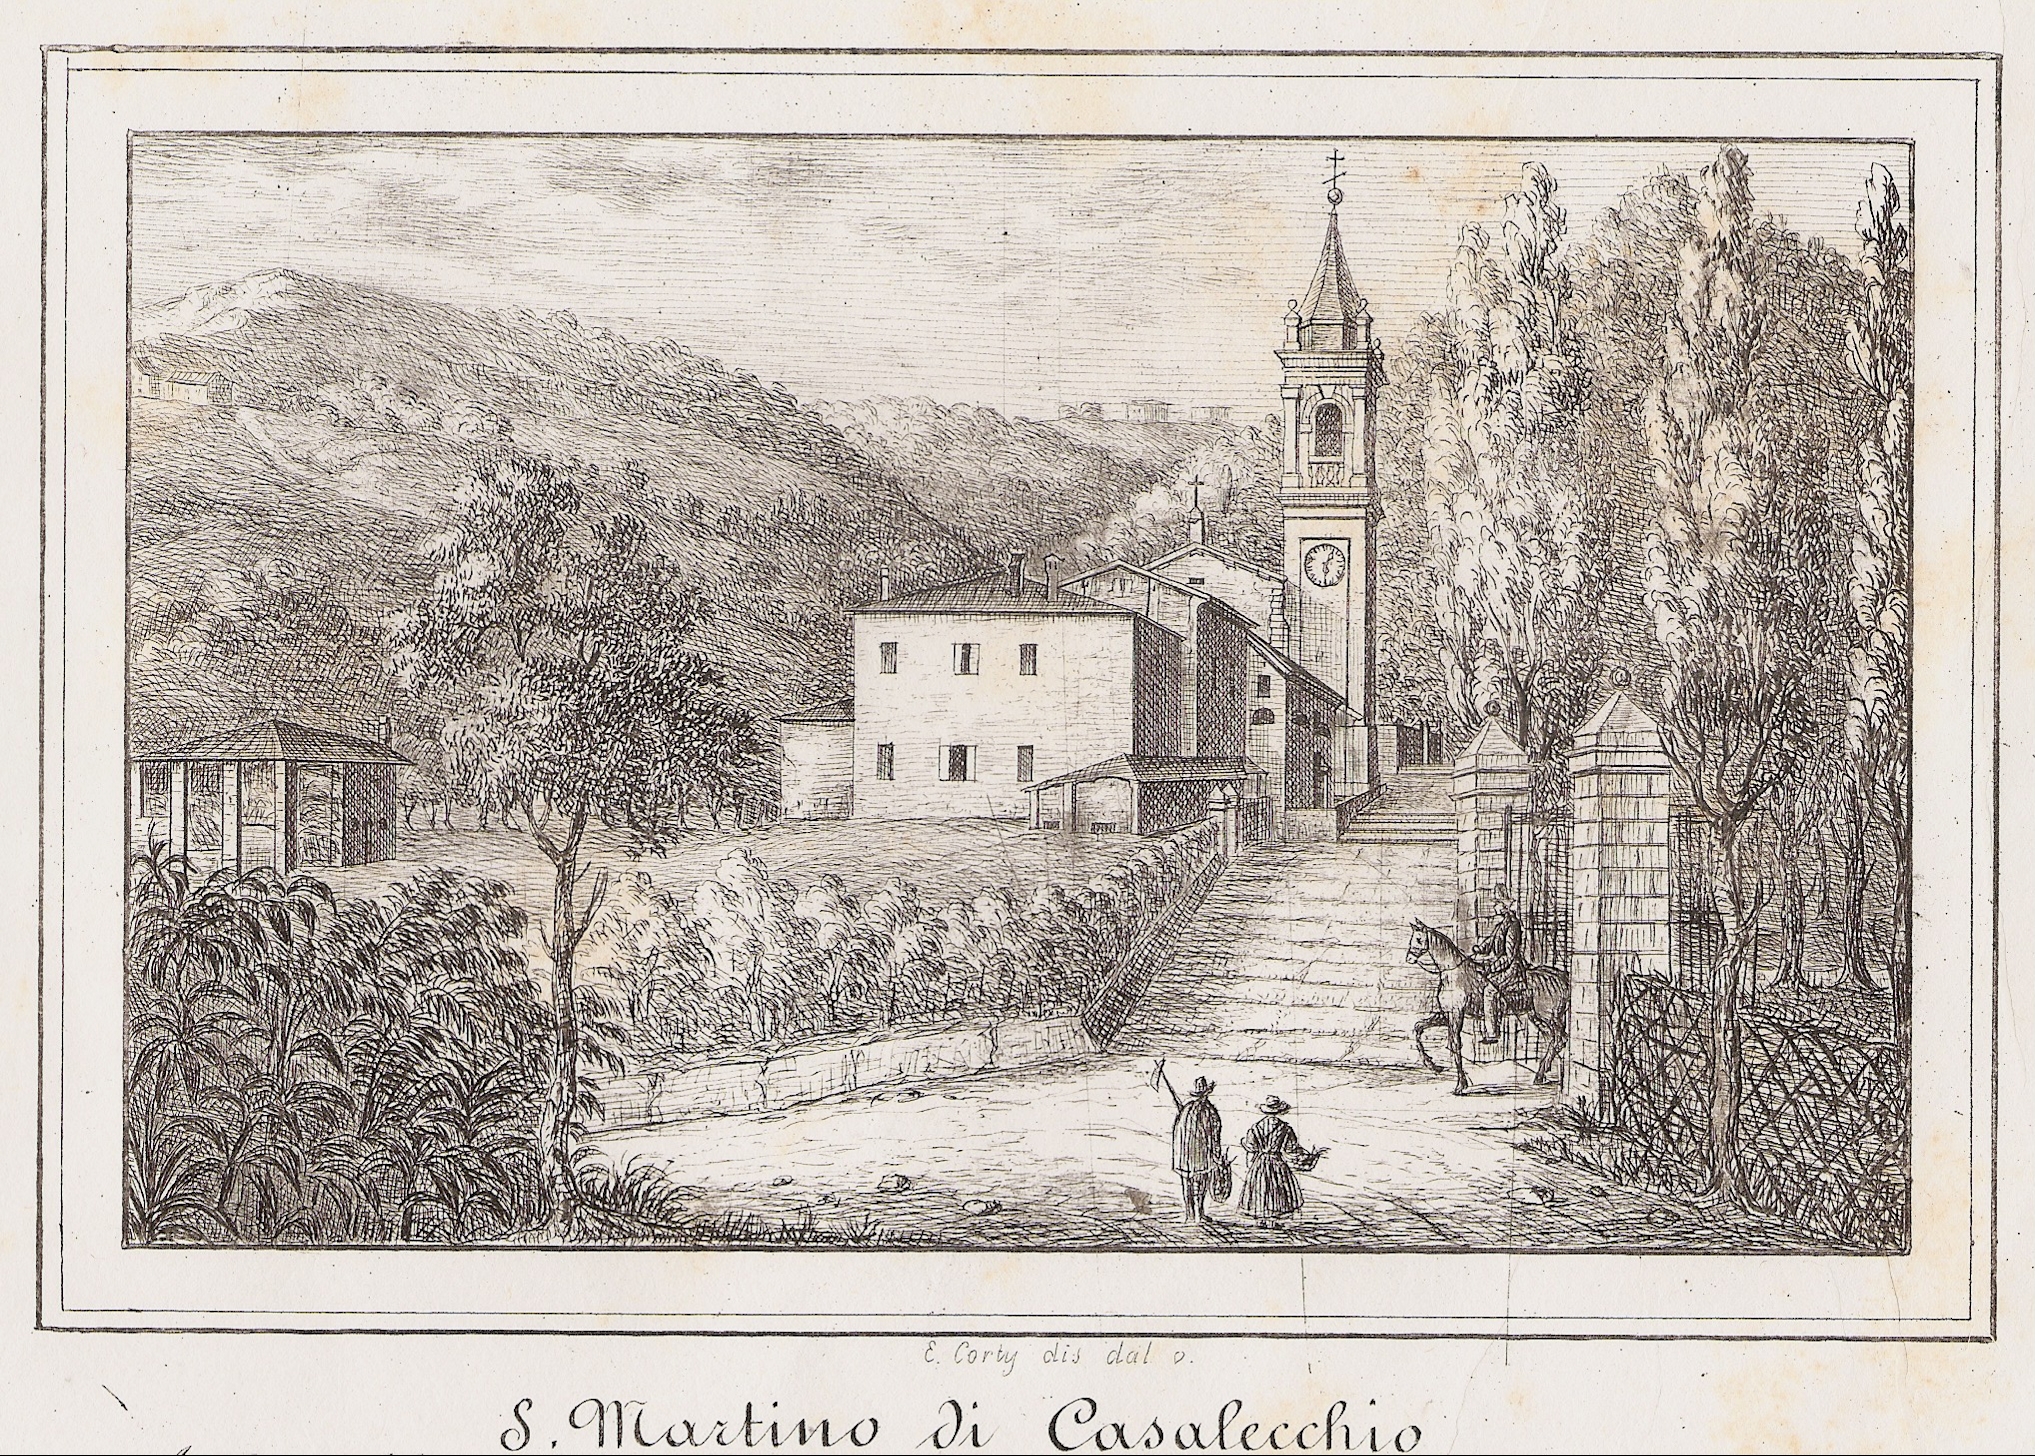 Chiesa di San Martino in una stampa del Corty degli anni '40 del XIX secolo